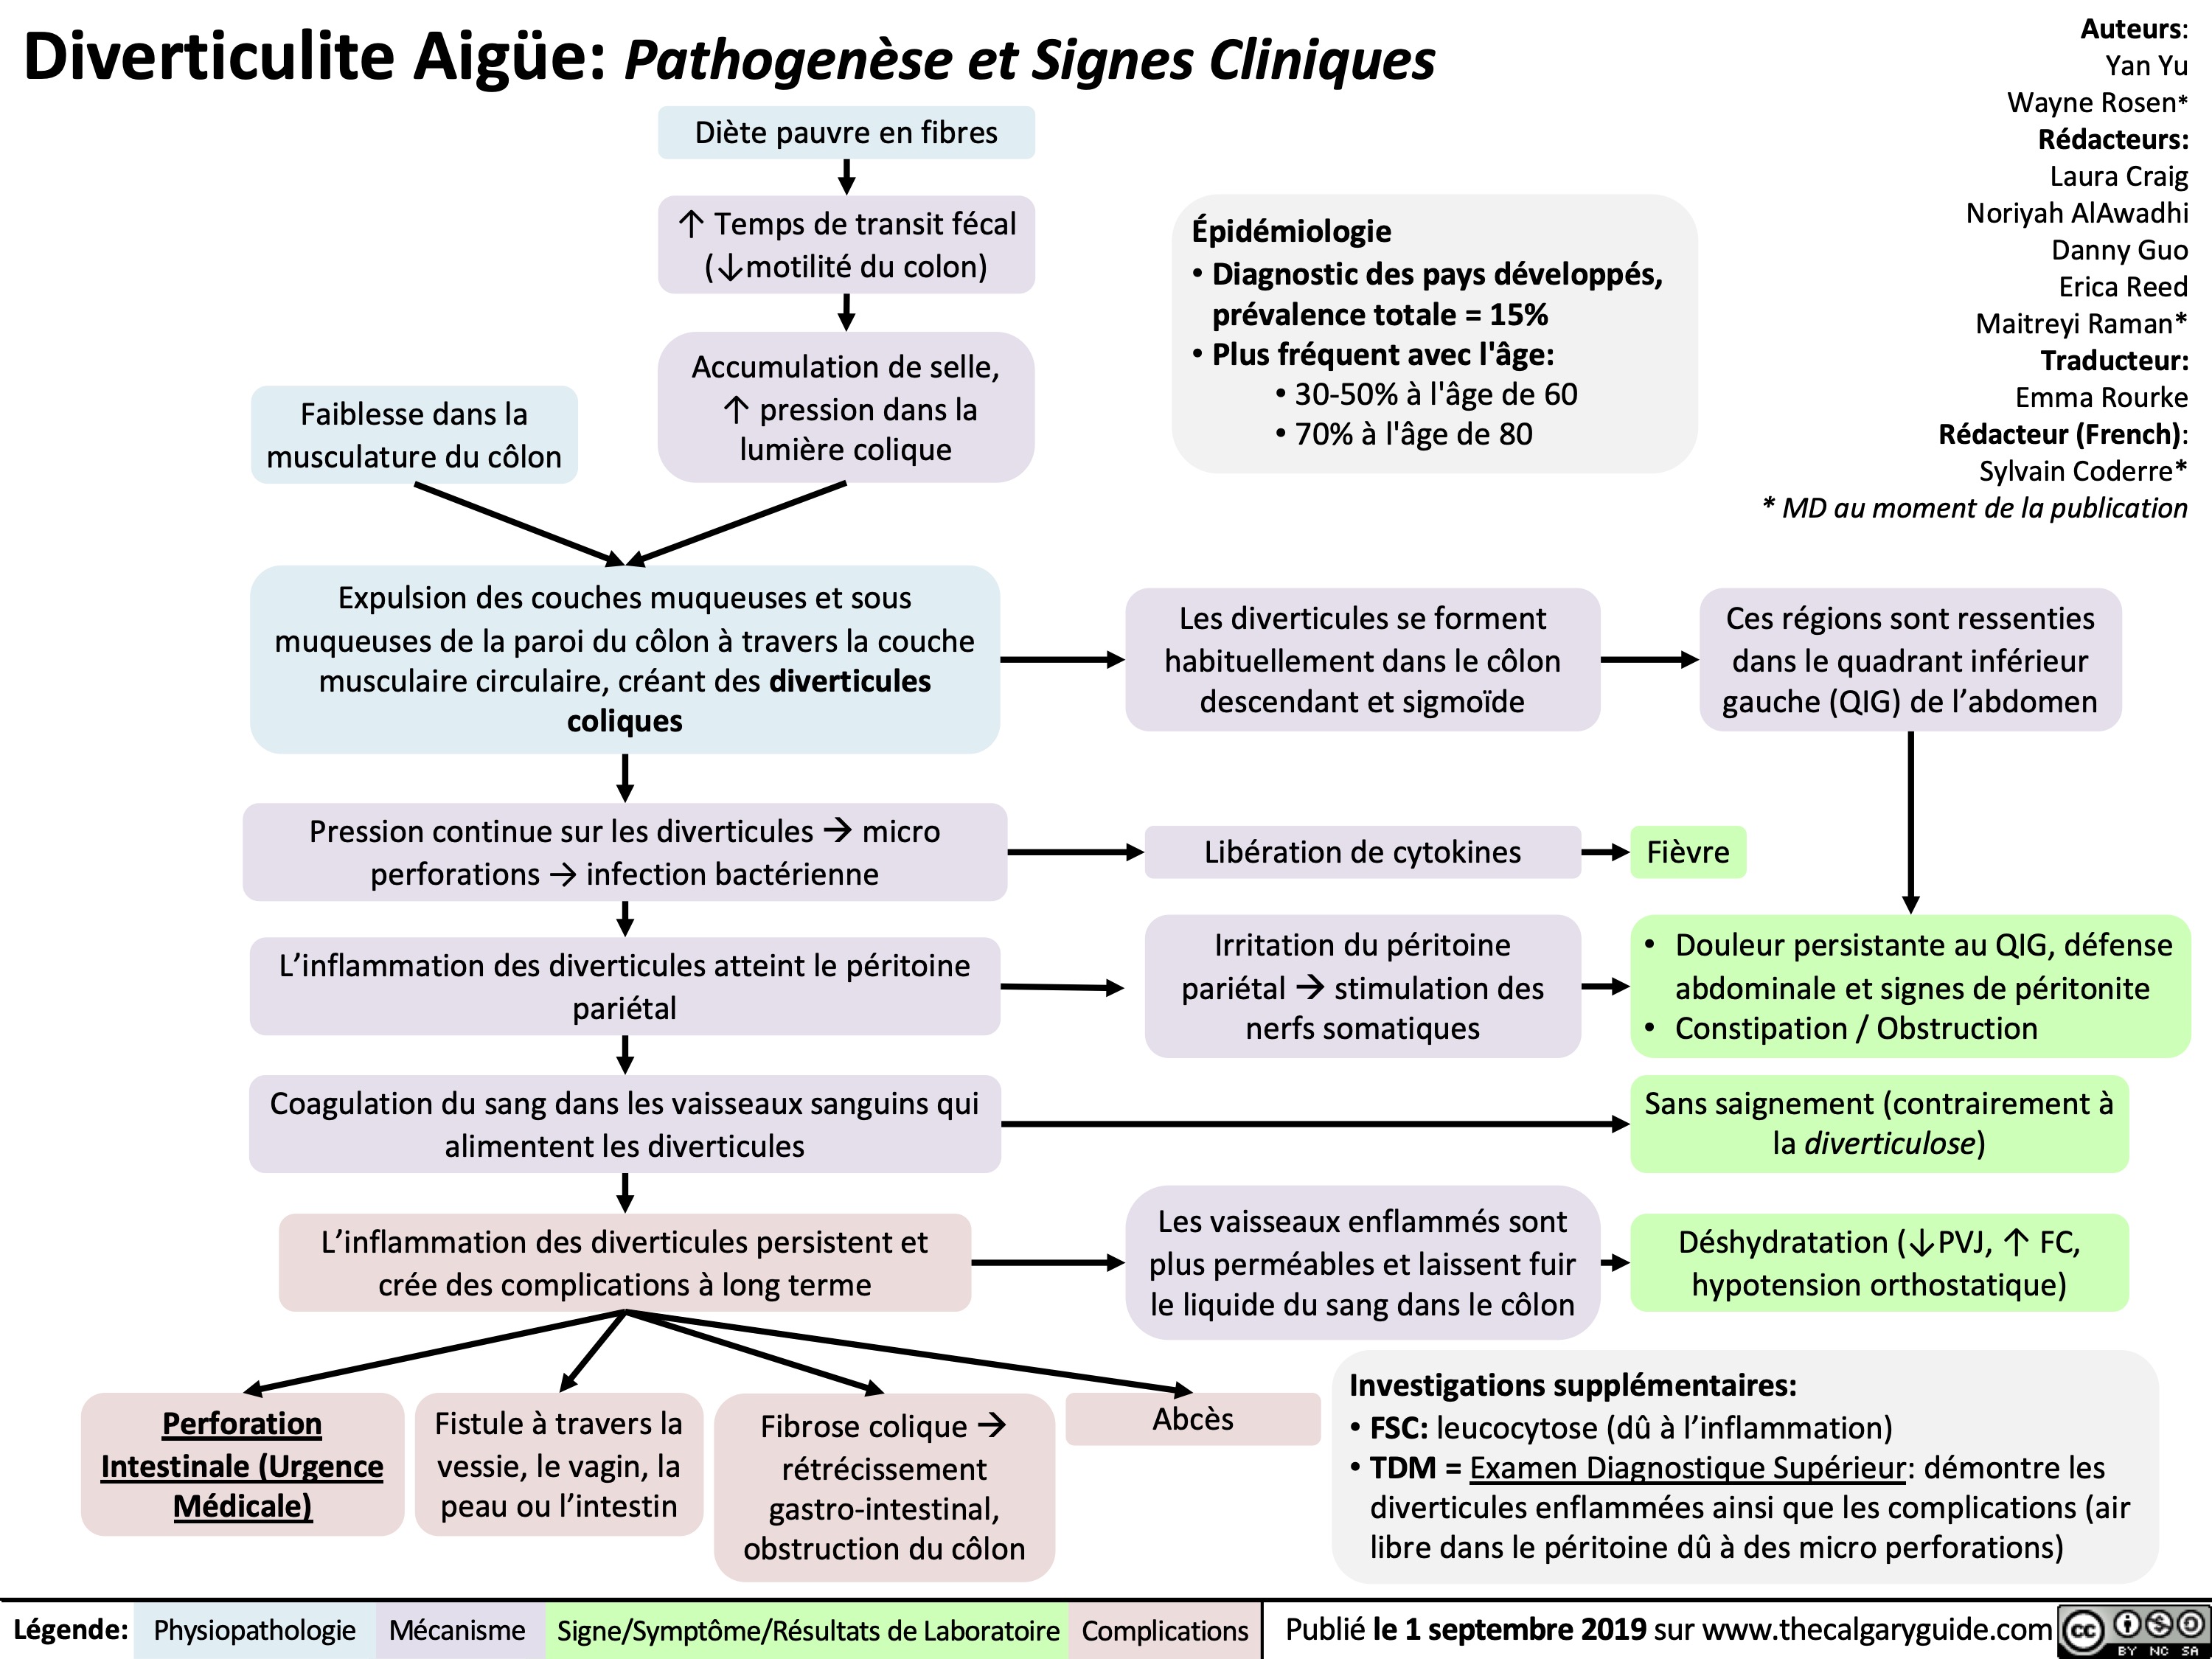 Diverticulite Aigüe: Pathogenèse et Signes Cliniques
diverticulite-aigue-pathogenese-et-signes-cliniques